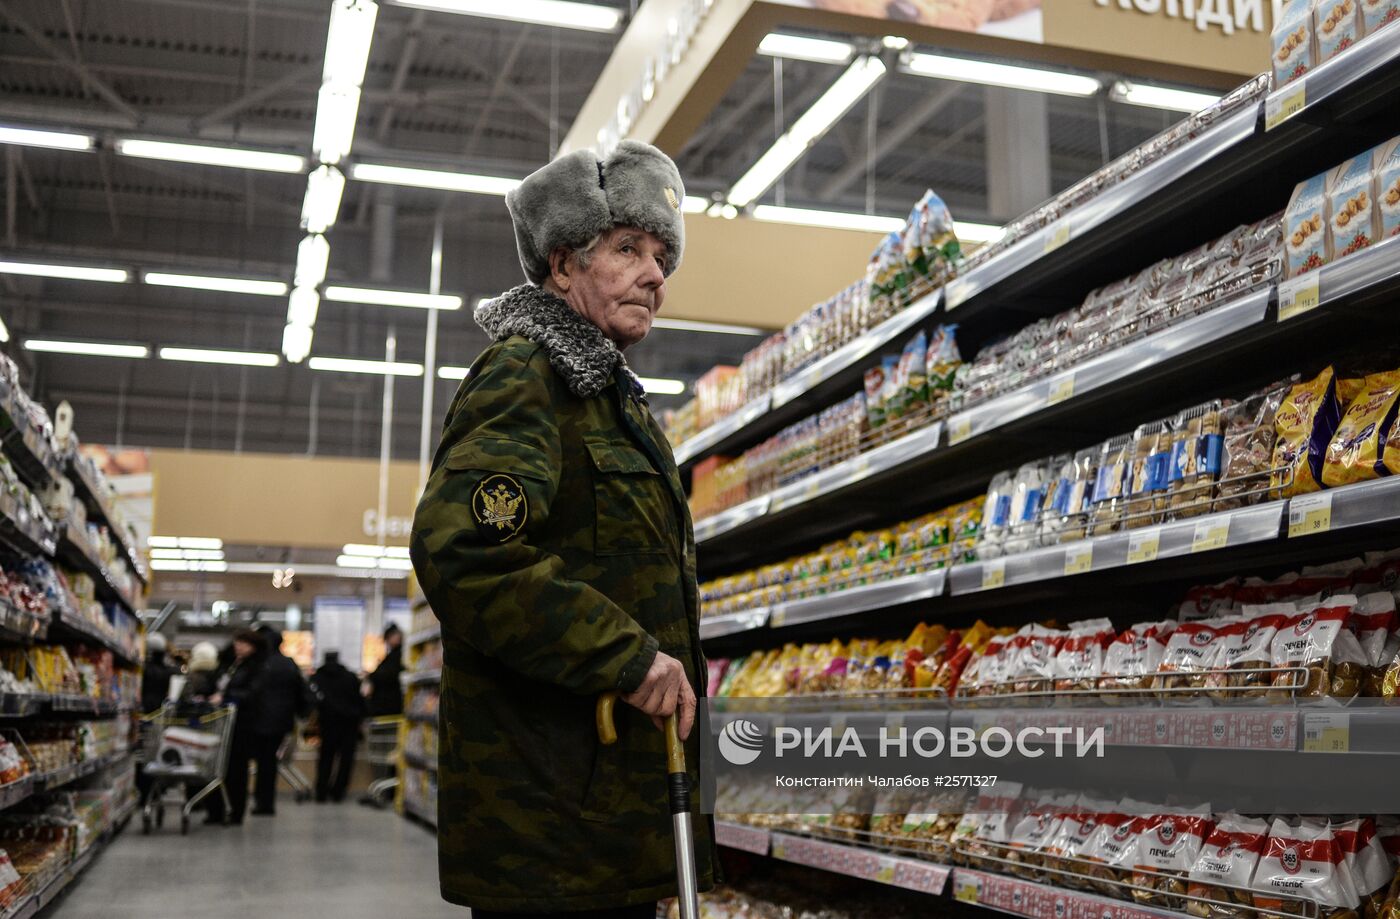 Гипермаркет "Лента" в Великом Новгороде